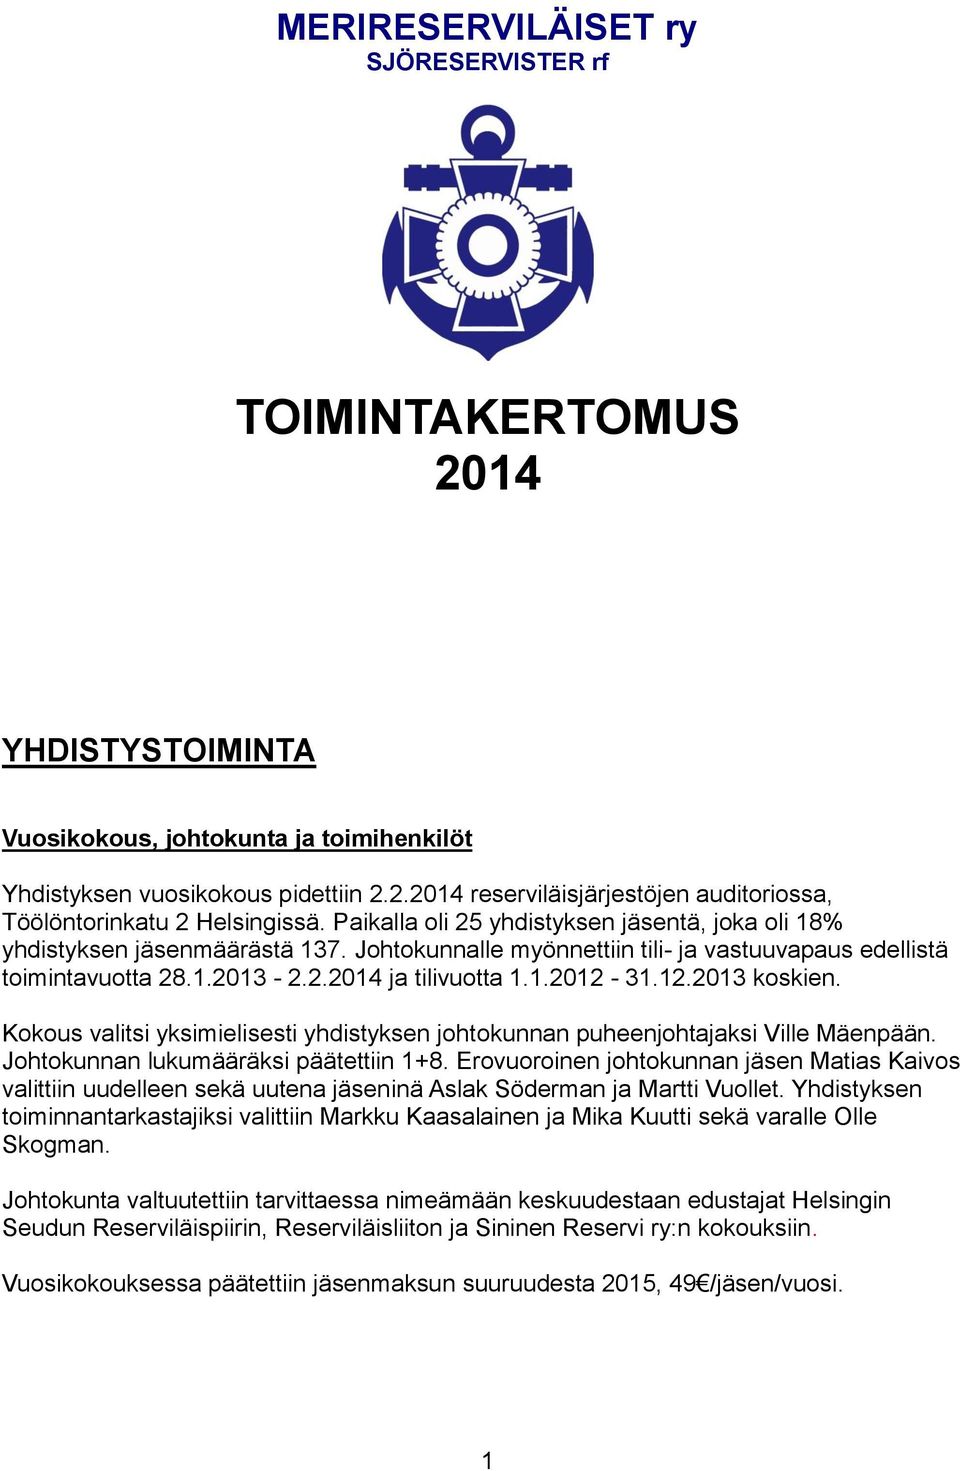 12.2013 koskien. Kokous valitsi yksimielisesti yhdistyksen johtokunnan puheenjohtajaksi Ville Mäenpään. Johtokunnan lukumääräksi päätettiin 1+8.